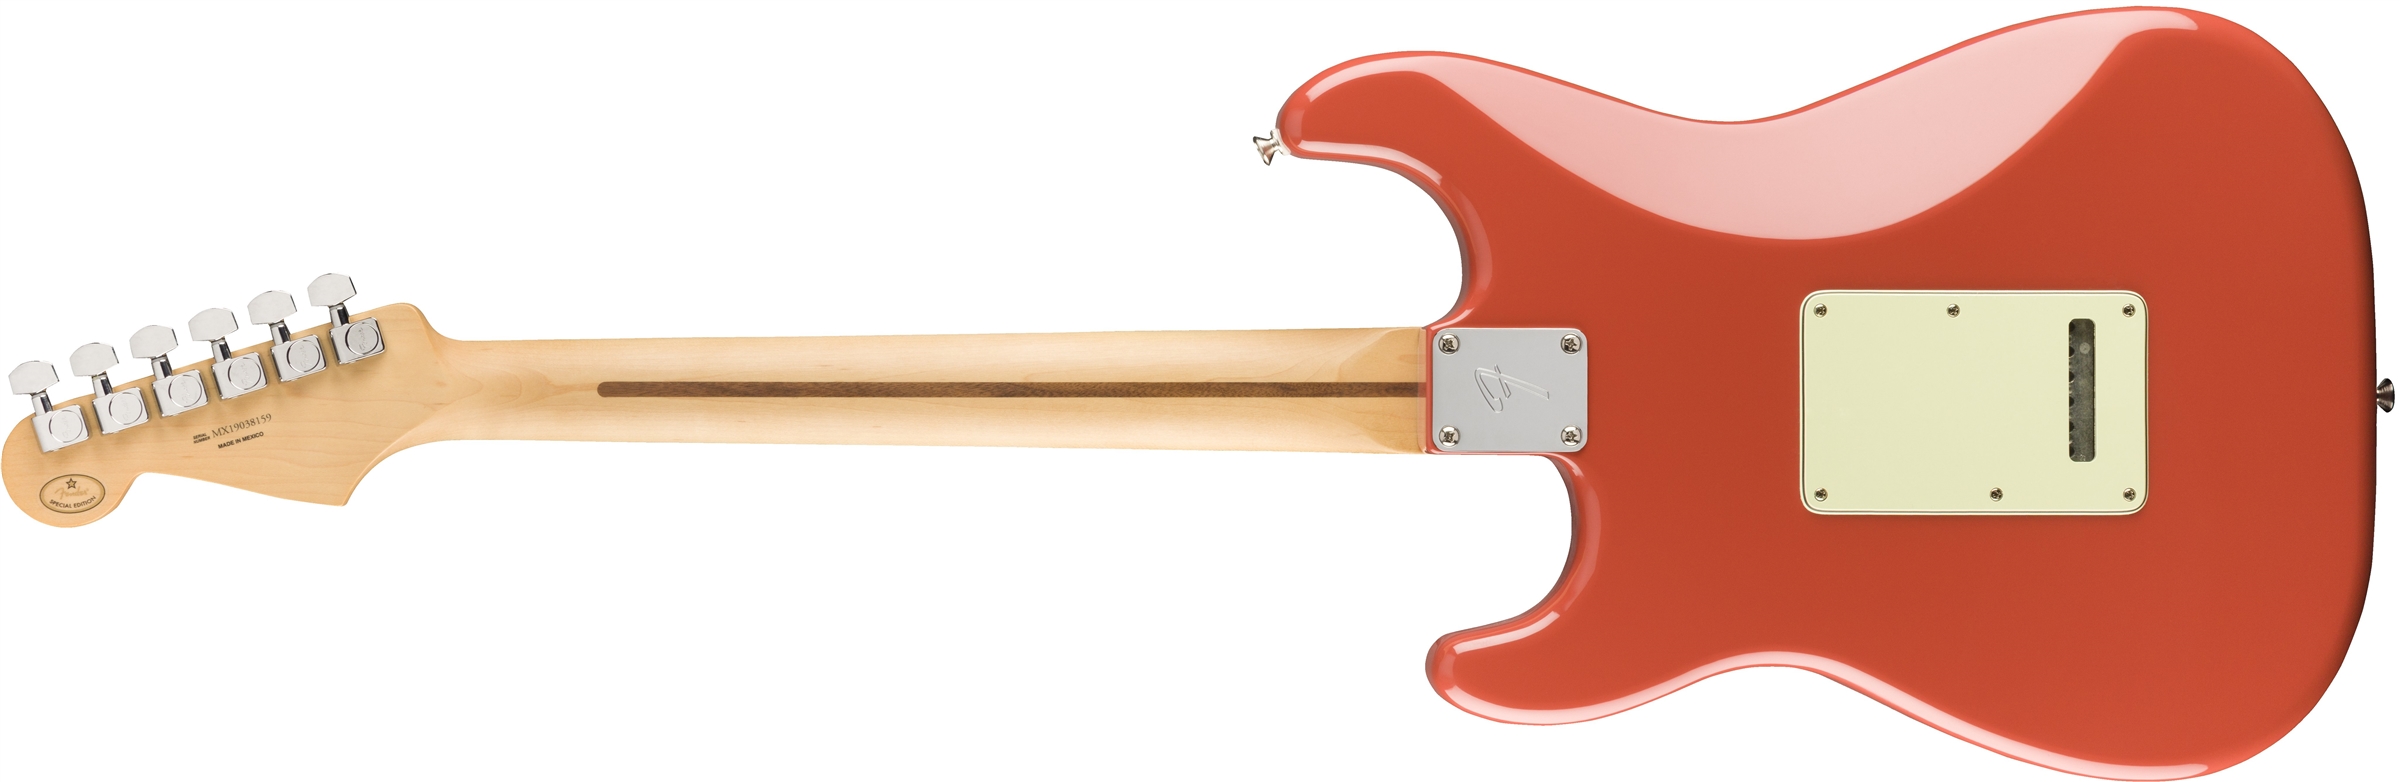 Fender Strat Player Ltd Mex 3s Trem Pf - Fiesta Red - Guitare Électrique Forme Str - Variation 1